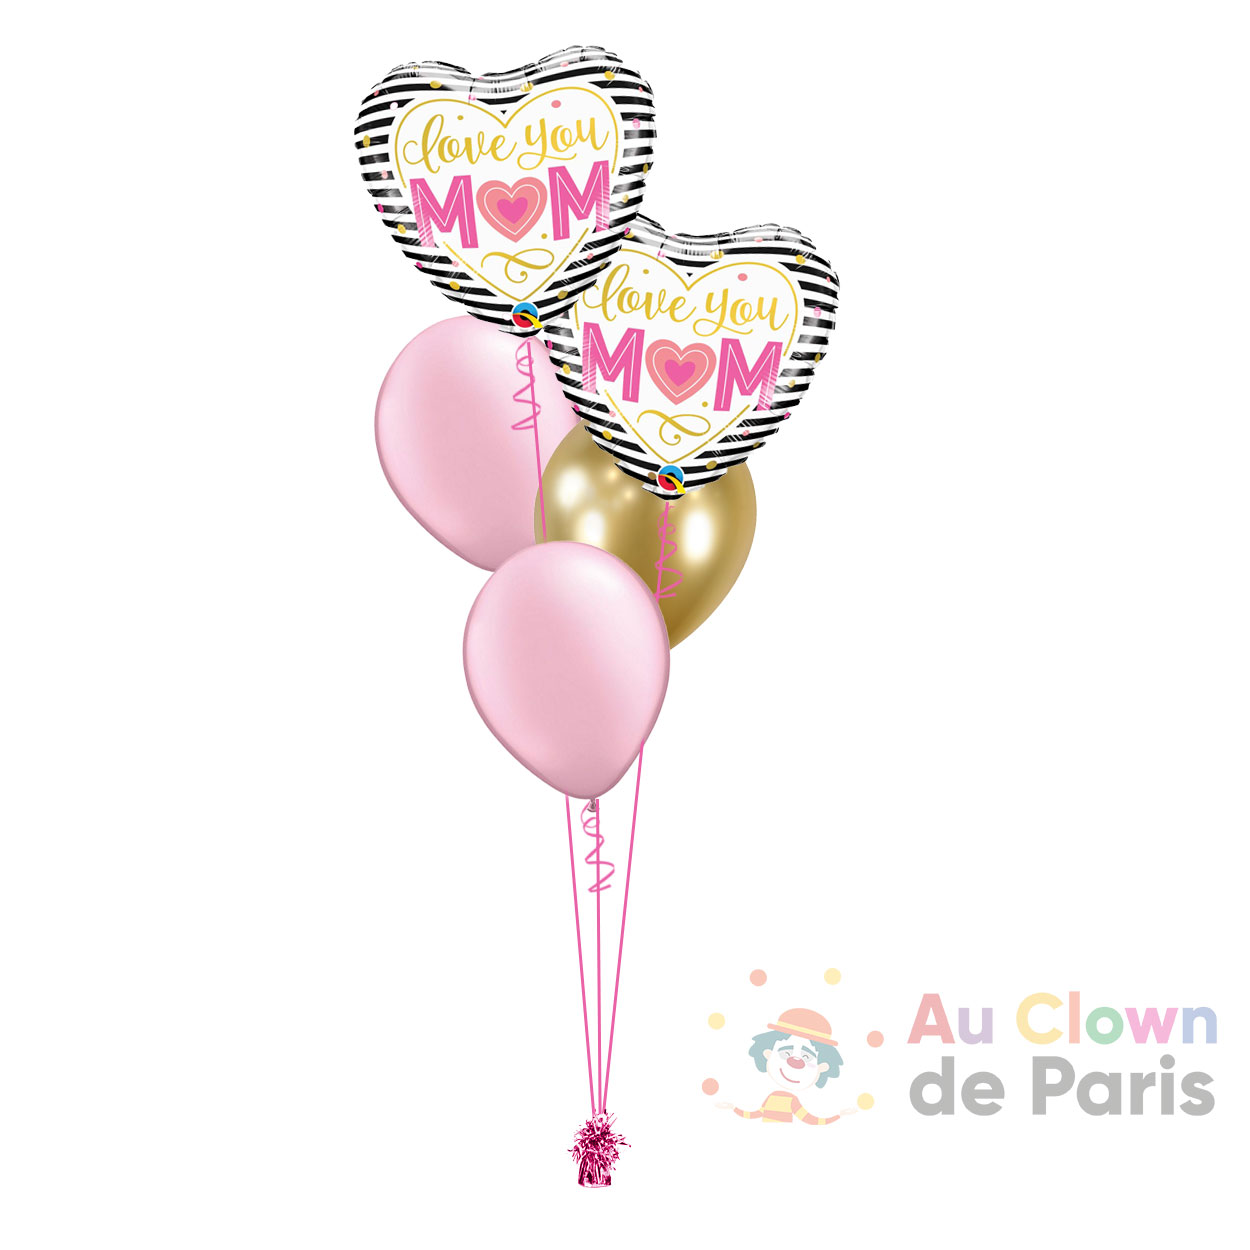 Ballons anniversaire 40 ans Noir et Gris - Au Clown de Paris